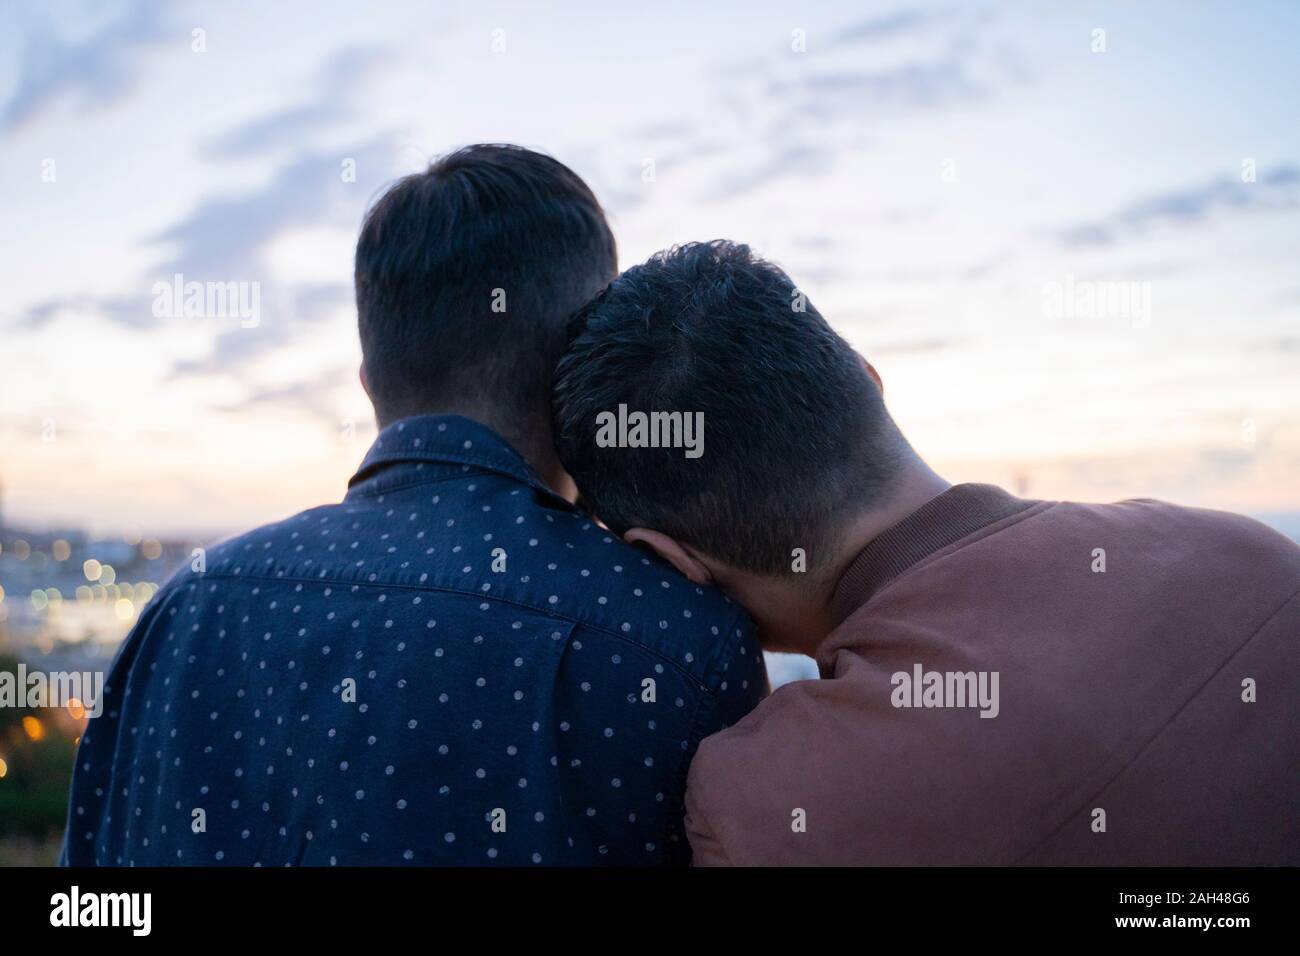 אפליקציית היכרויות בחינם לגברים הומוסקסואלים